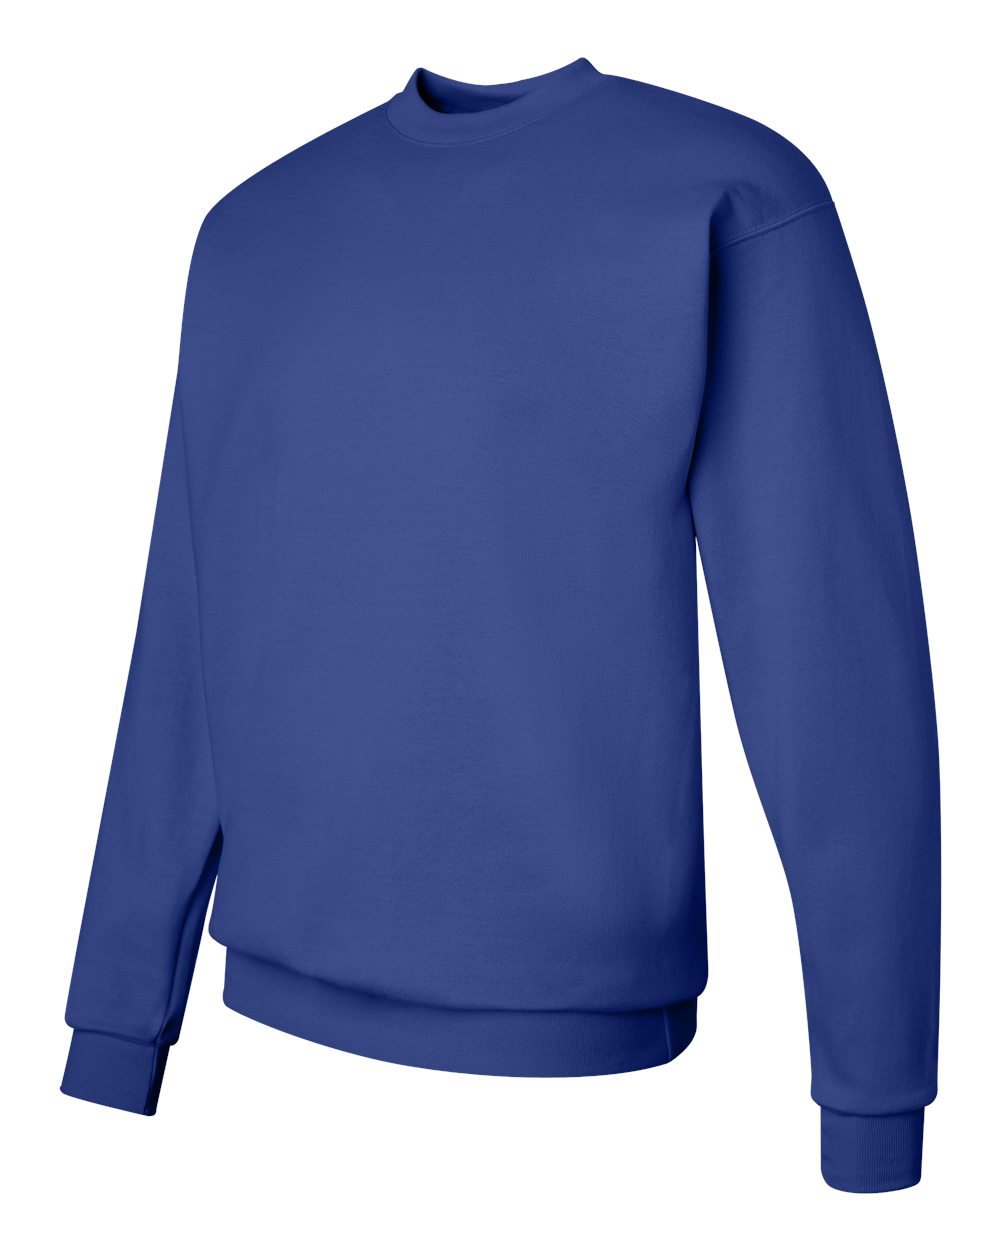 Hanes Men's Sweatshirt, EcoSmart … curated on LTK